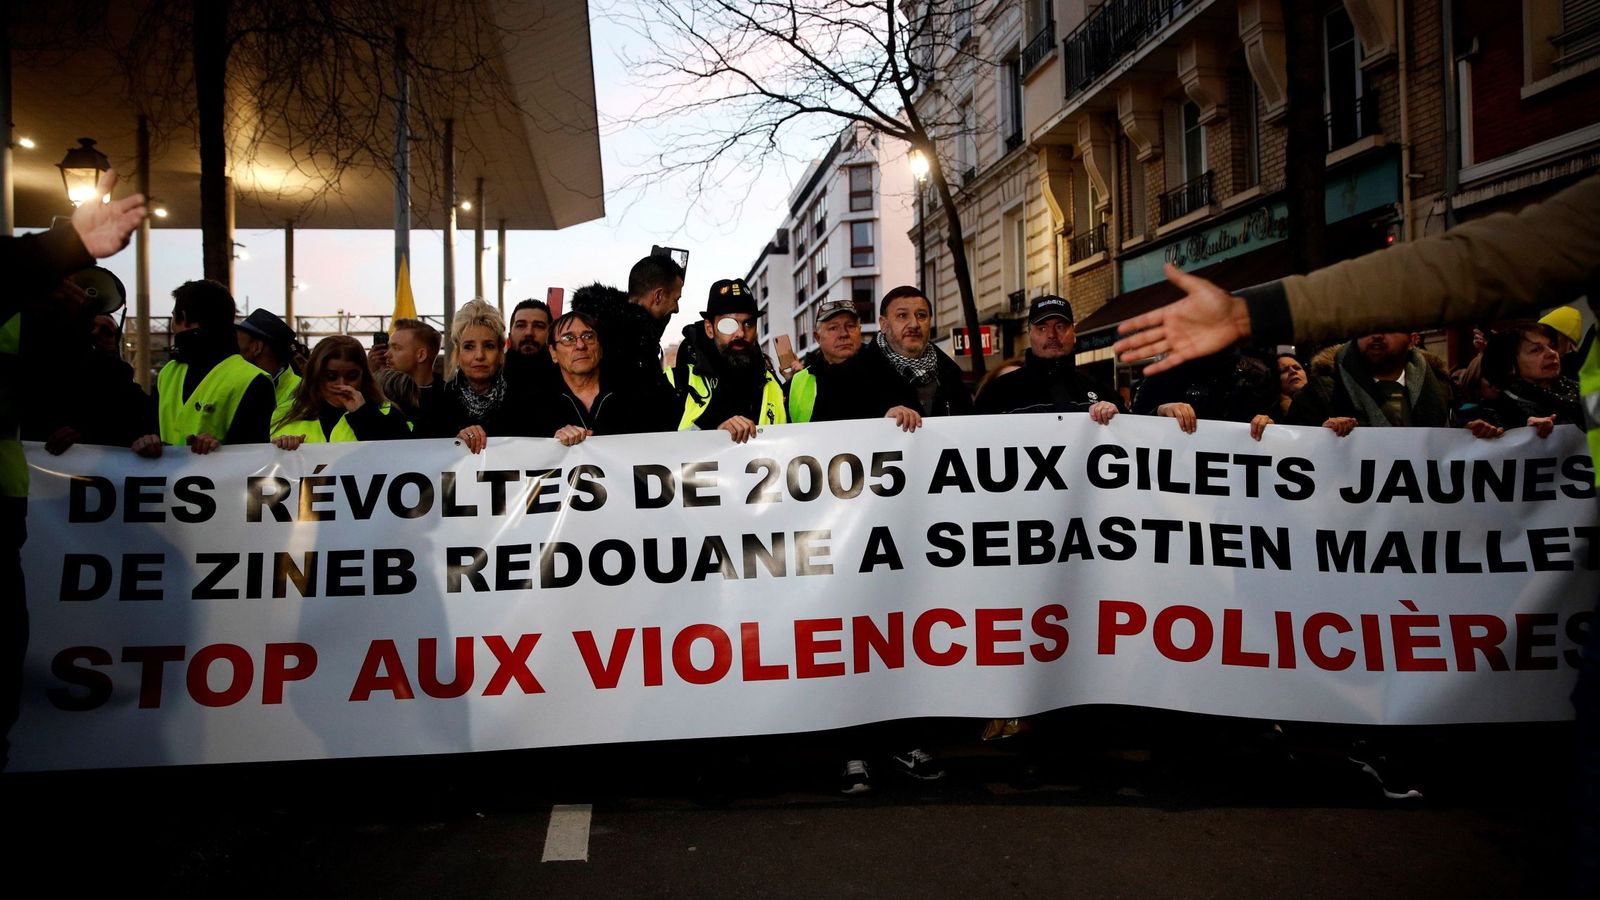 Foto: Los "Gilets Jaunes" (chalecos amarillos), protestan contra la violencia policial este miércoles en Argenteuil, al norte de París. (EFE)